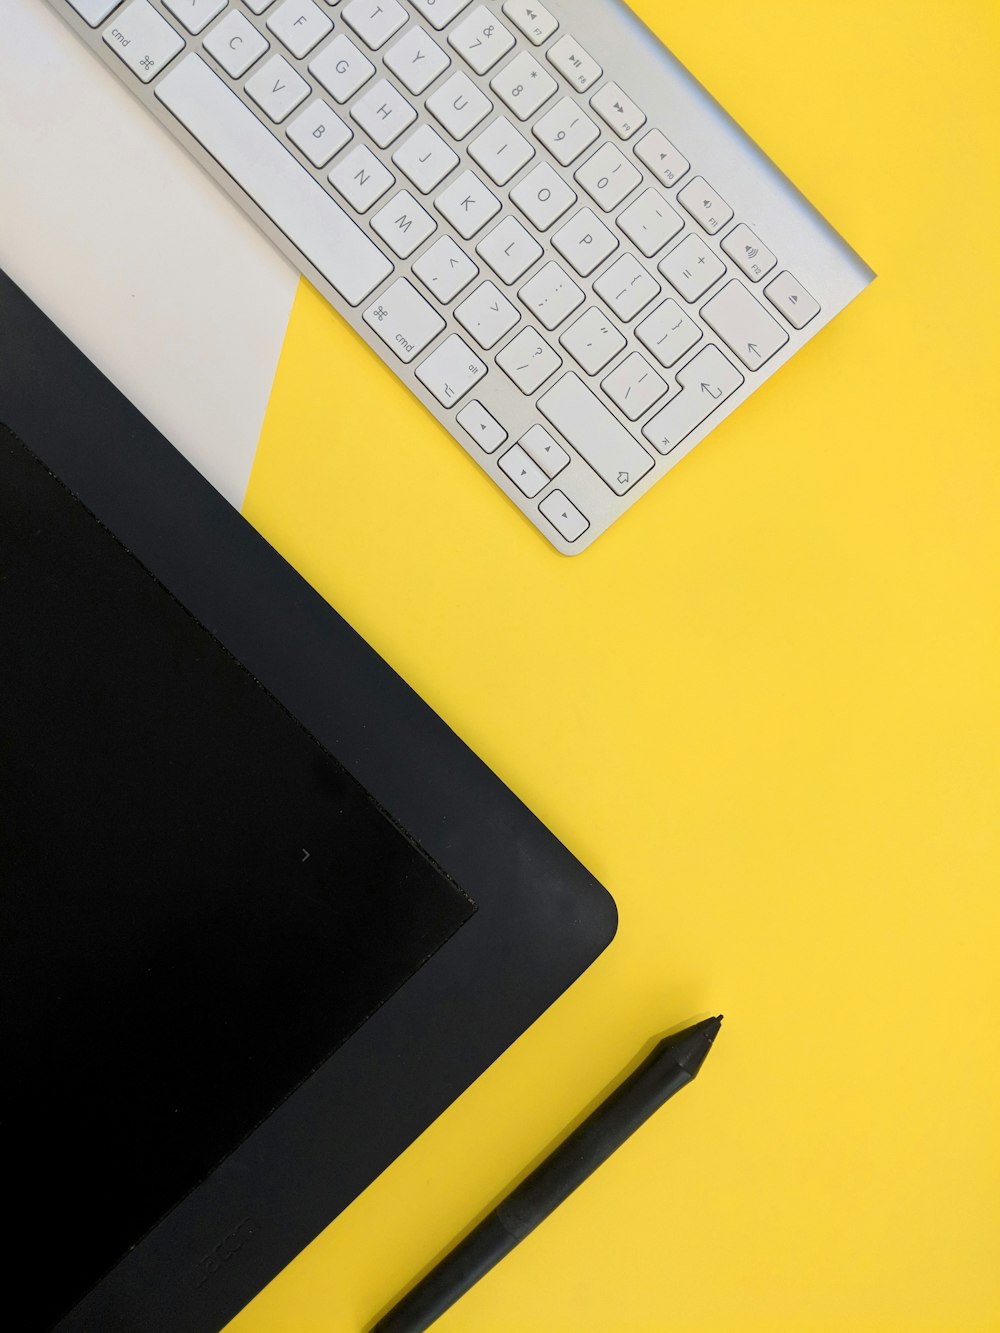 검은색 태블릿 컴퓨터와 스타일러스 펜 옆에 있는 회색 Apple 무선 키보드